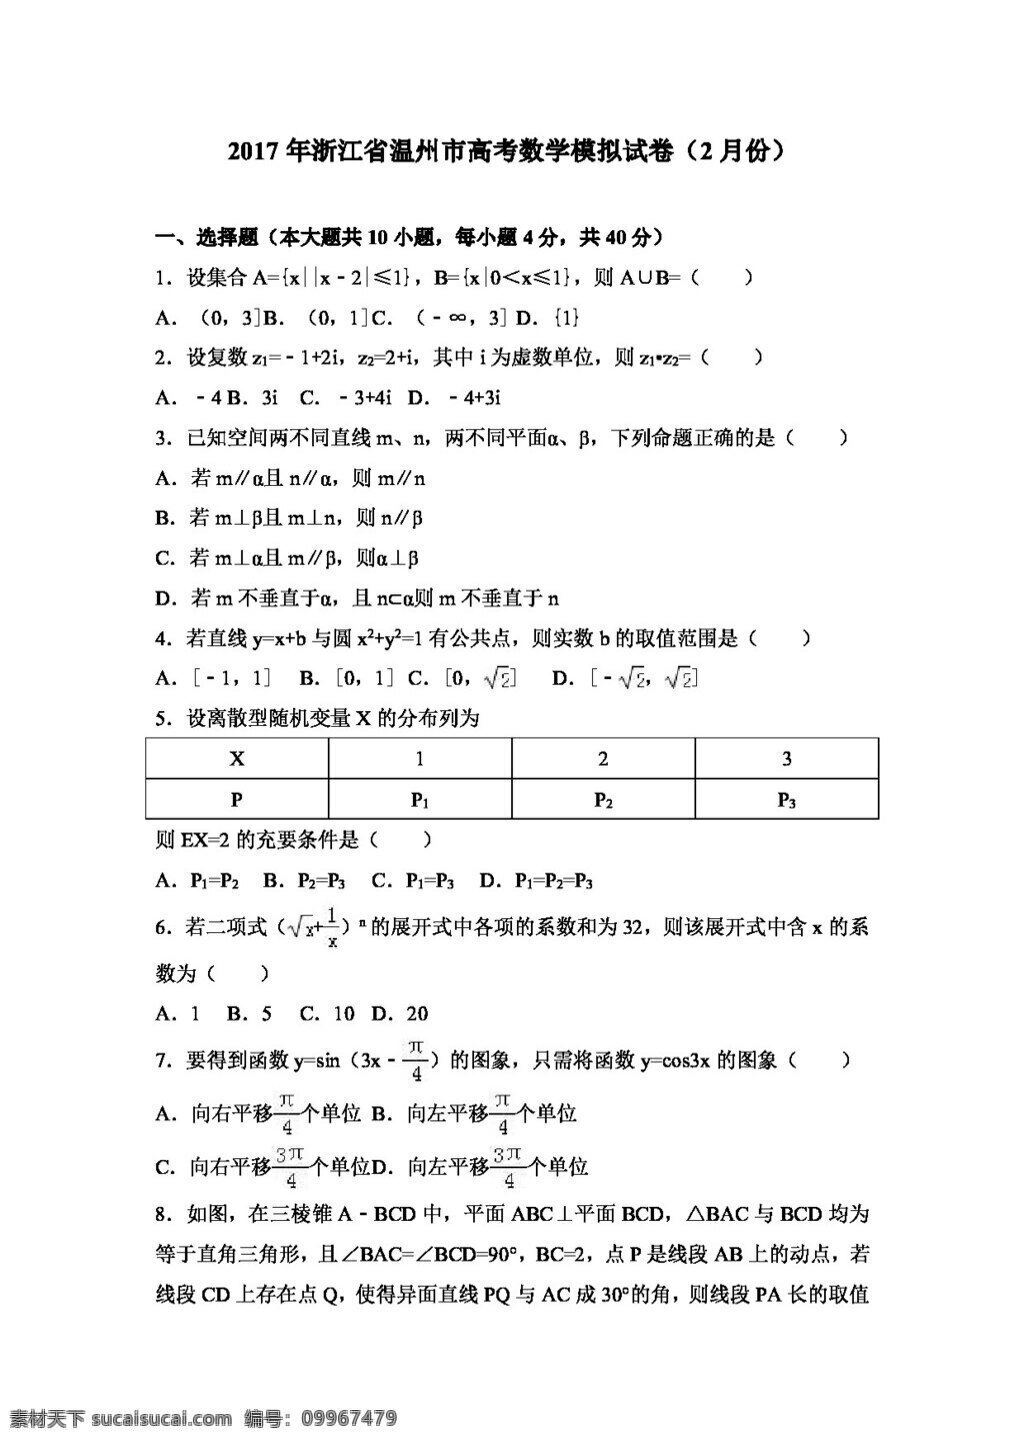 数学 人教 版 2017 年 浙江省 温州市 高考 模拟试卷 月份 高考专区 人教版 试卷